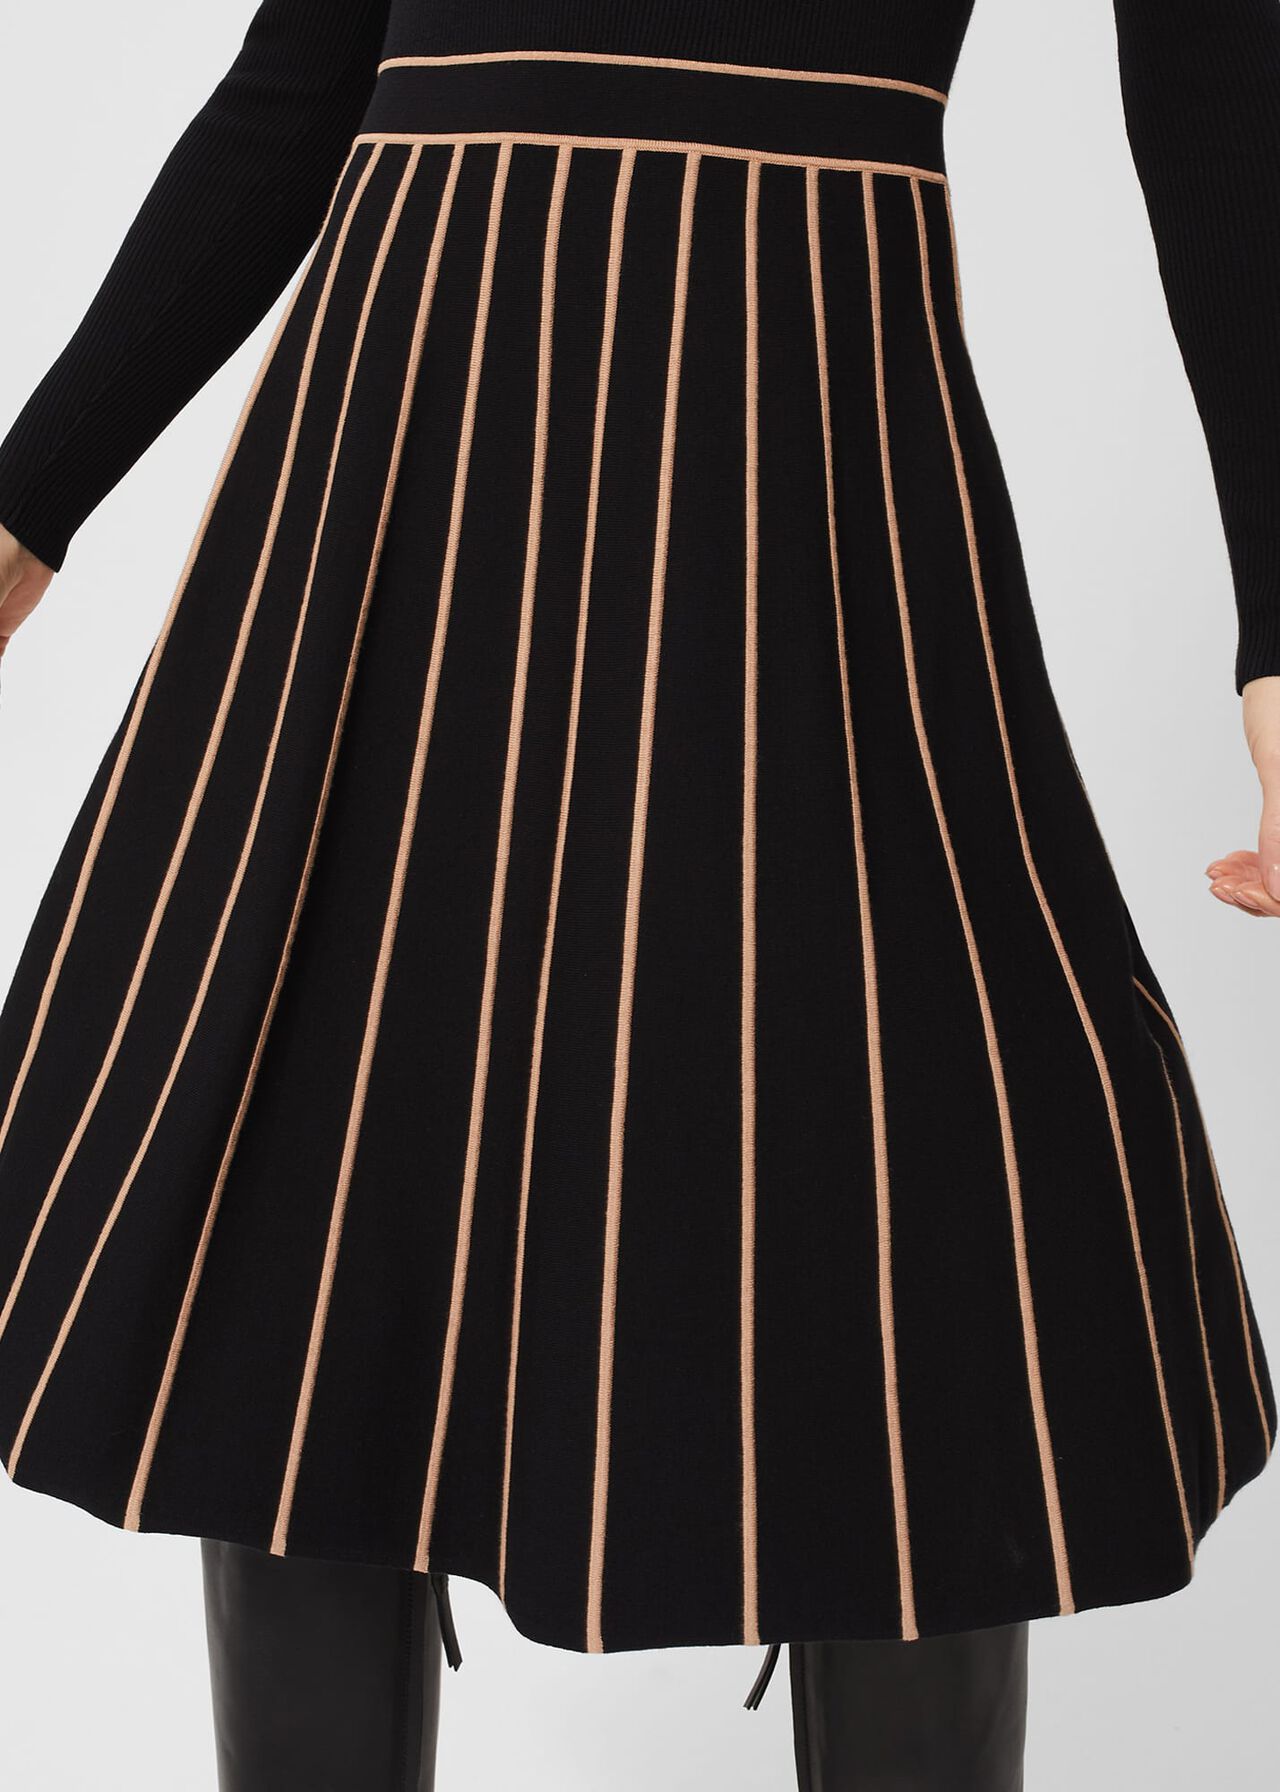 Petite Lena Knitted Dress, Black Stone, hi-res